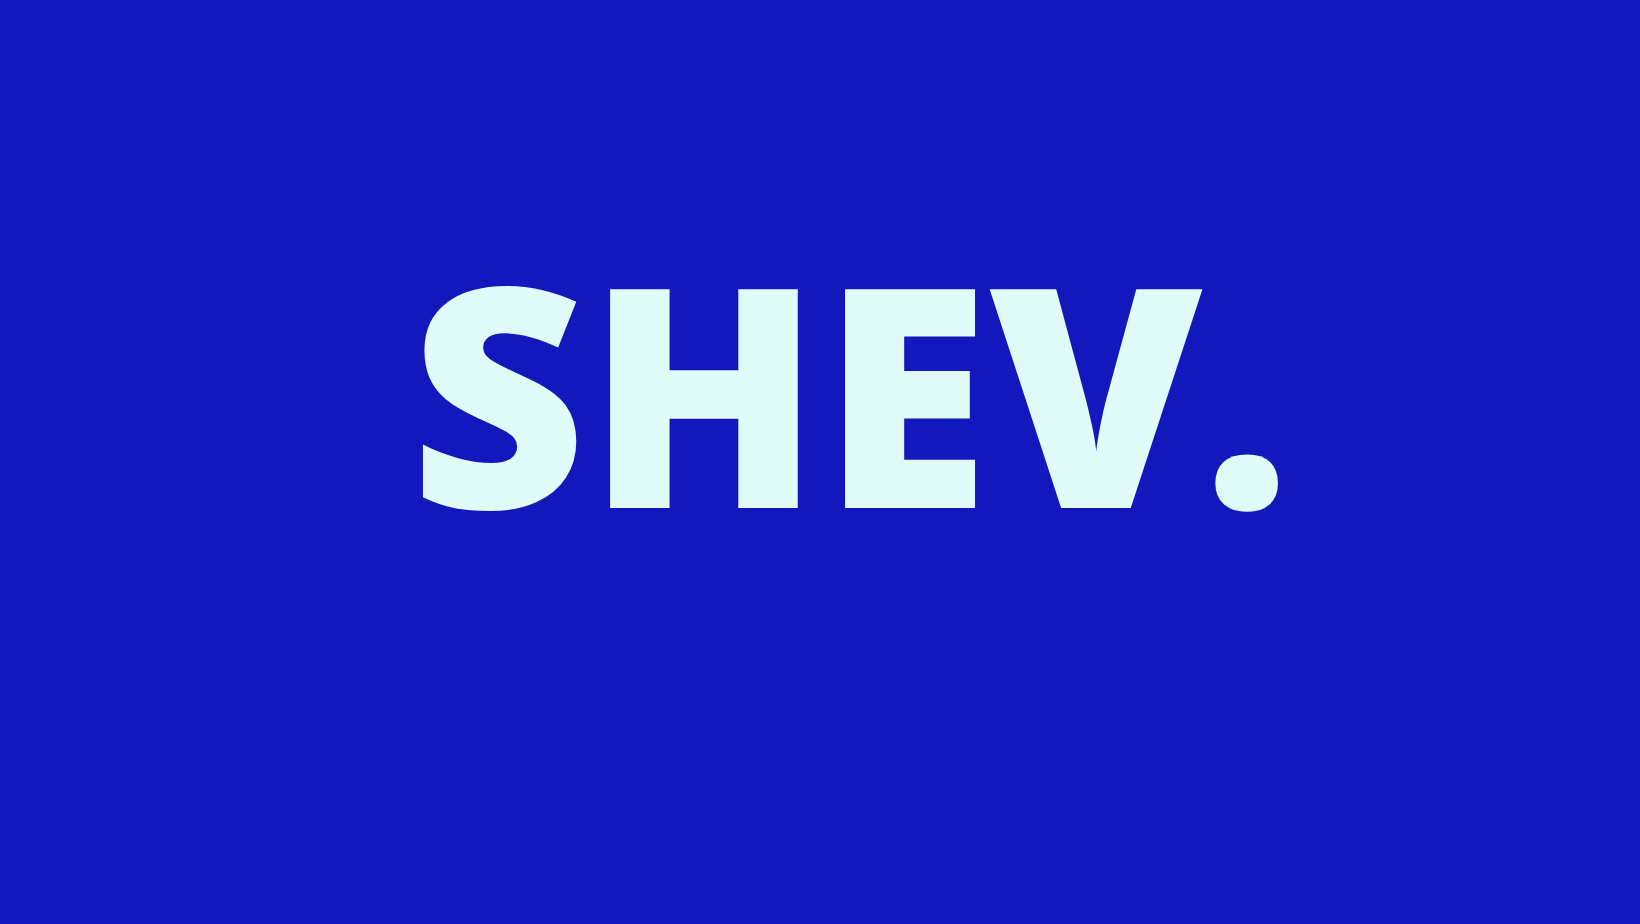 SHEV